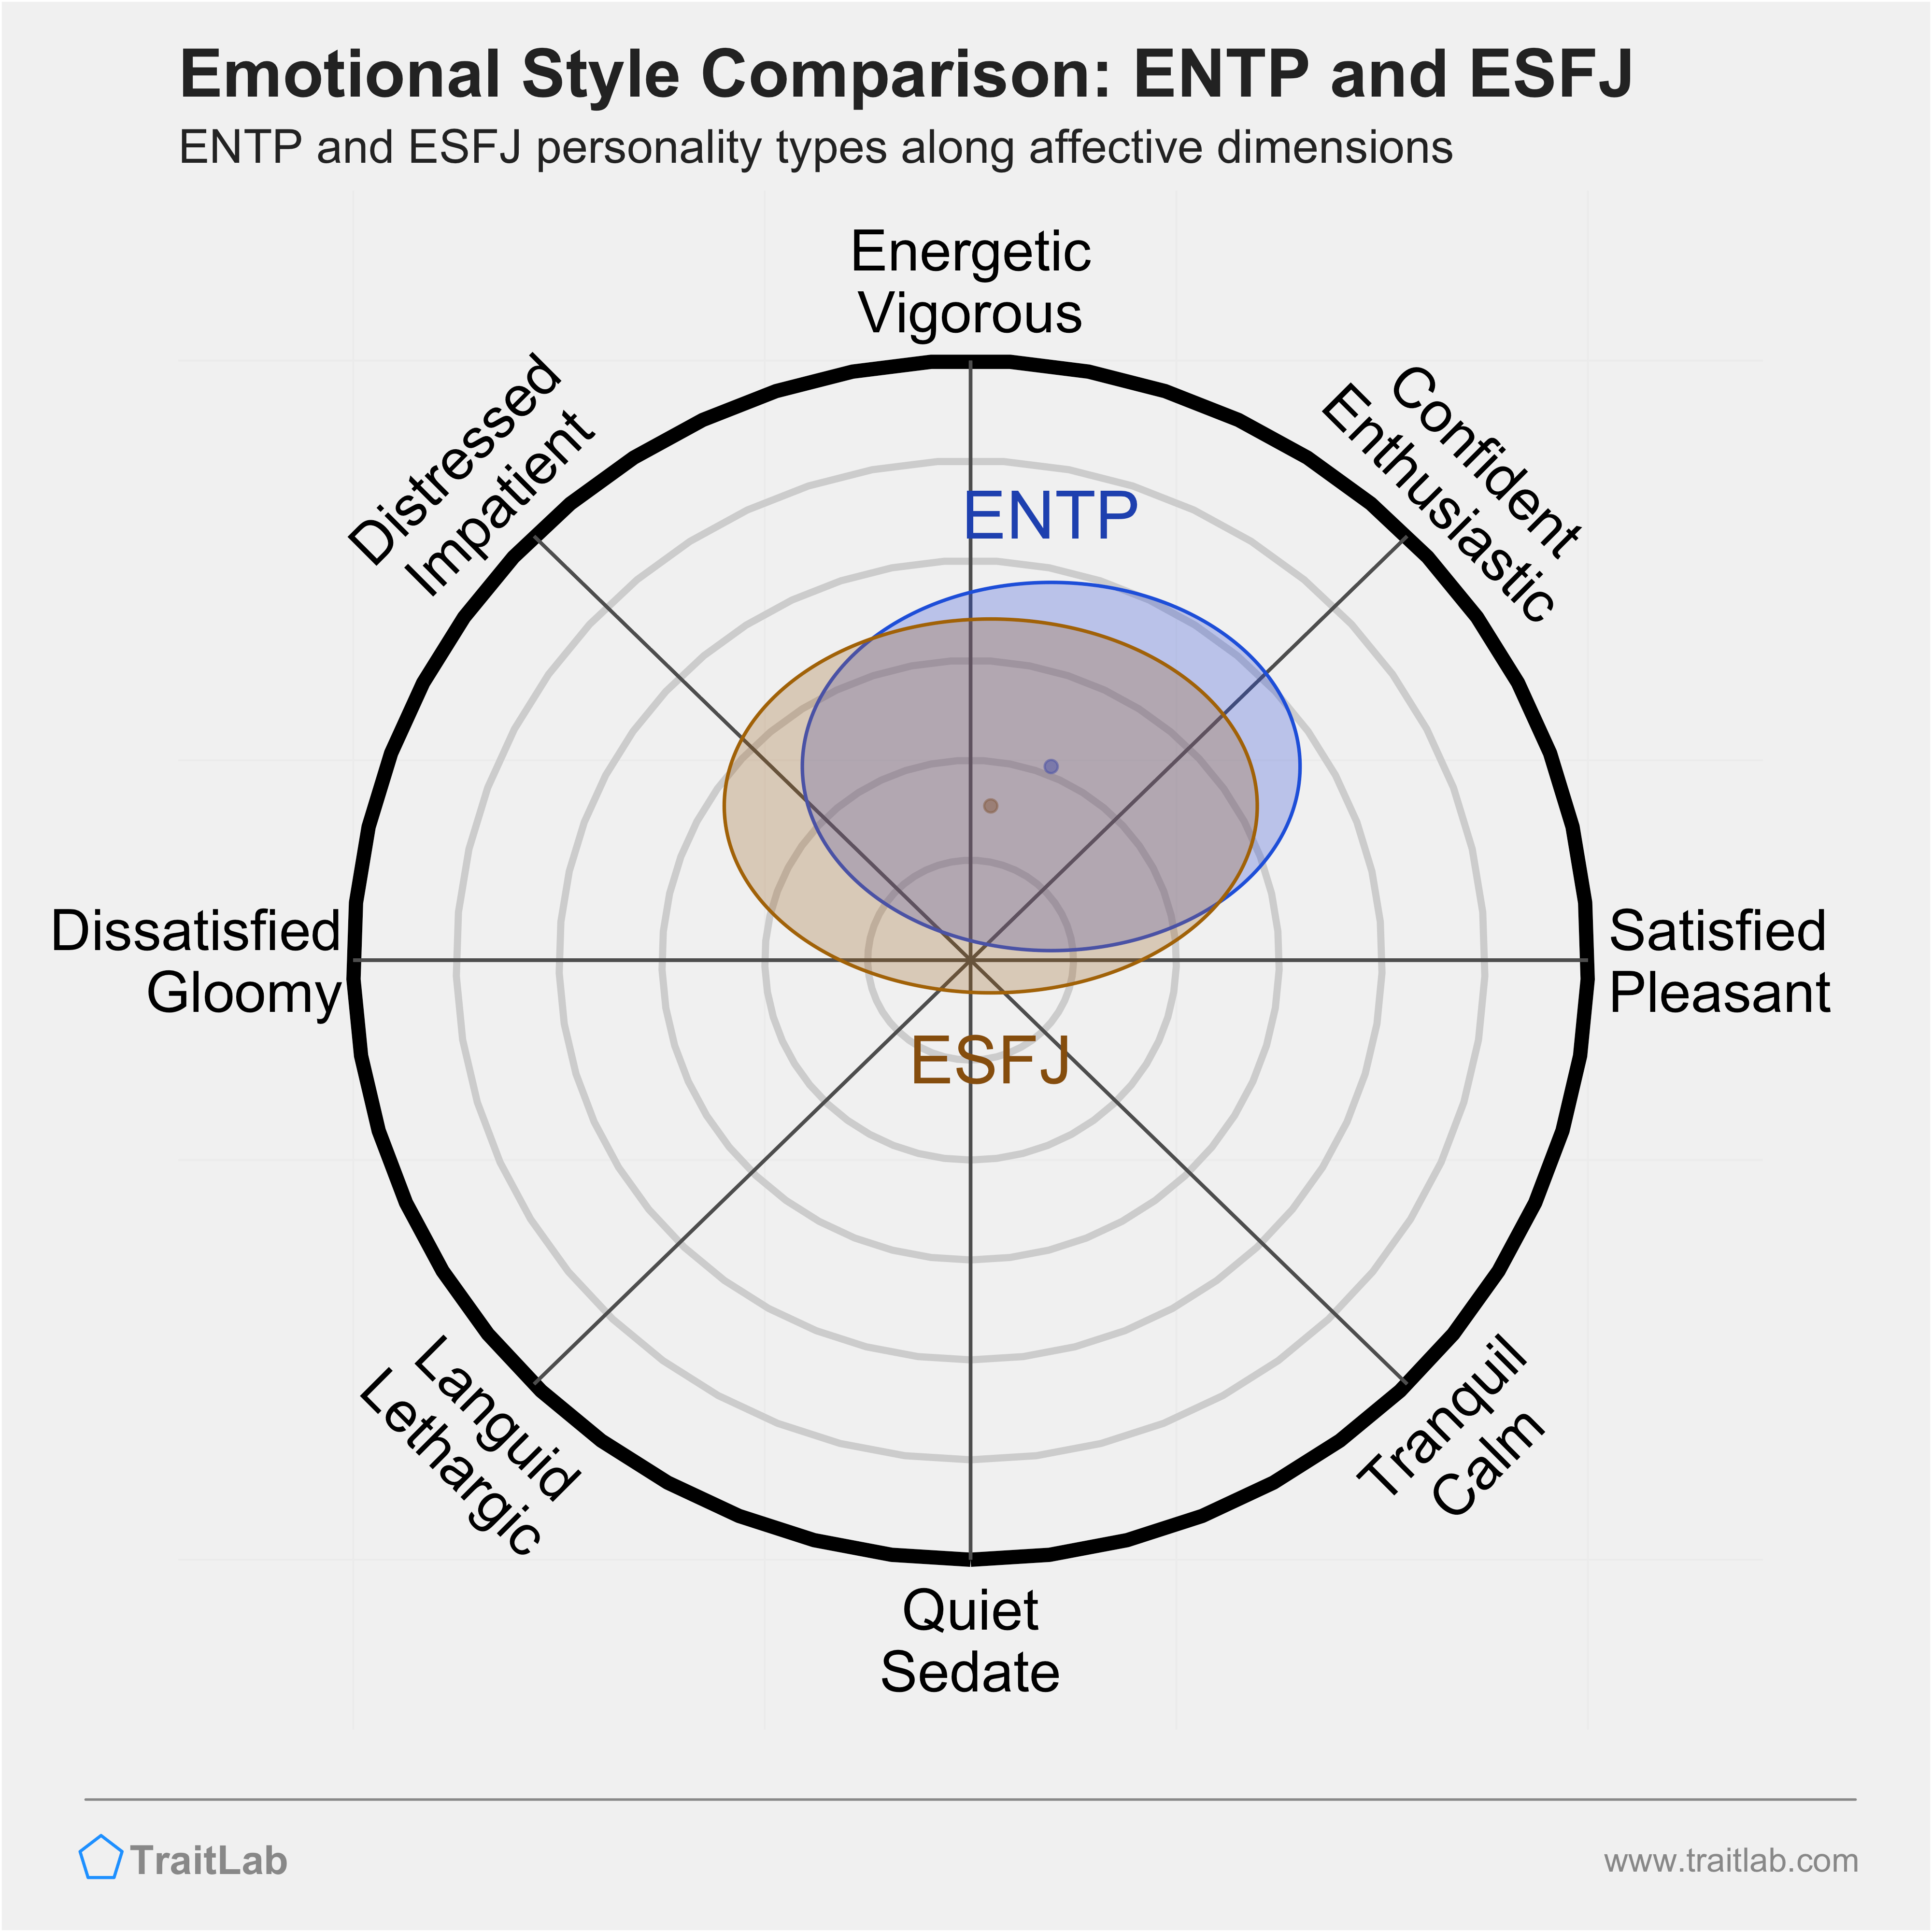 ENTP and ESFJ comparison across emotional (affective) dimensions